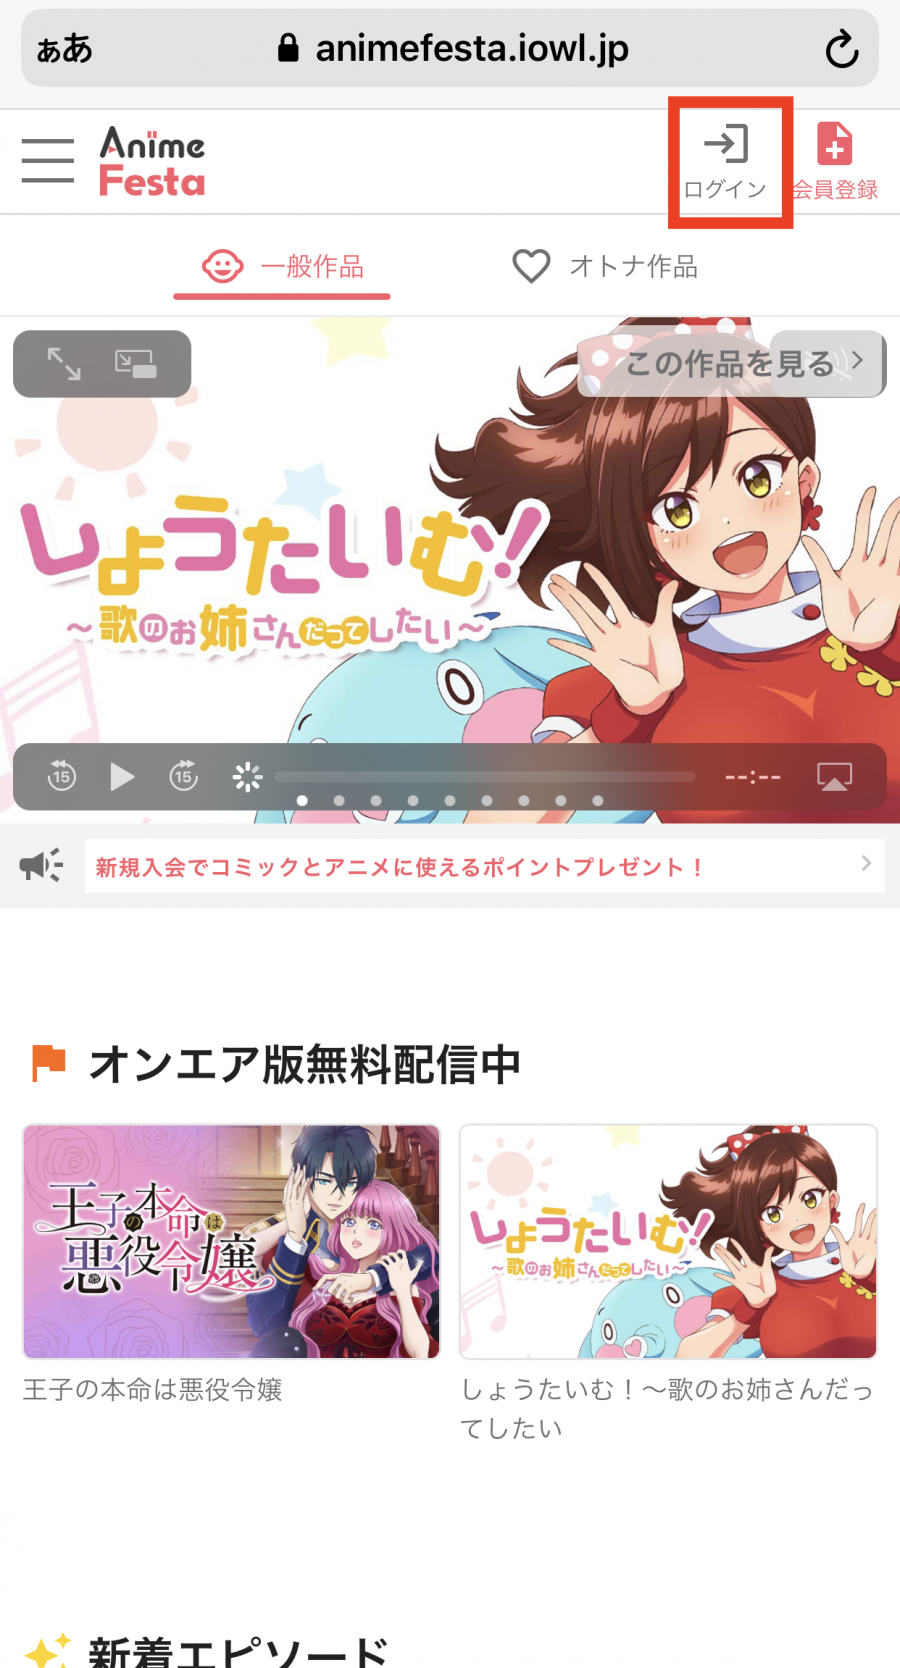 「アニメフェスタ」のログイン画面